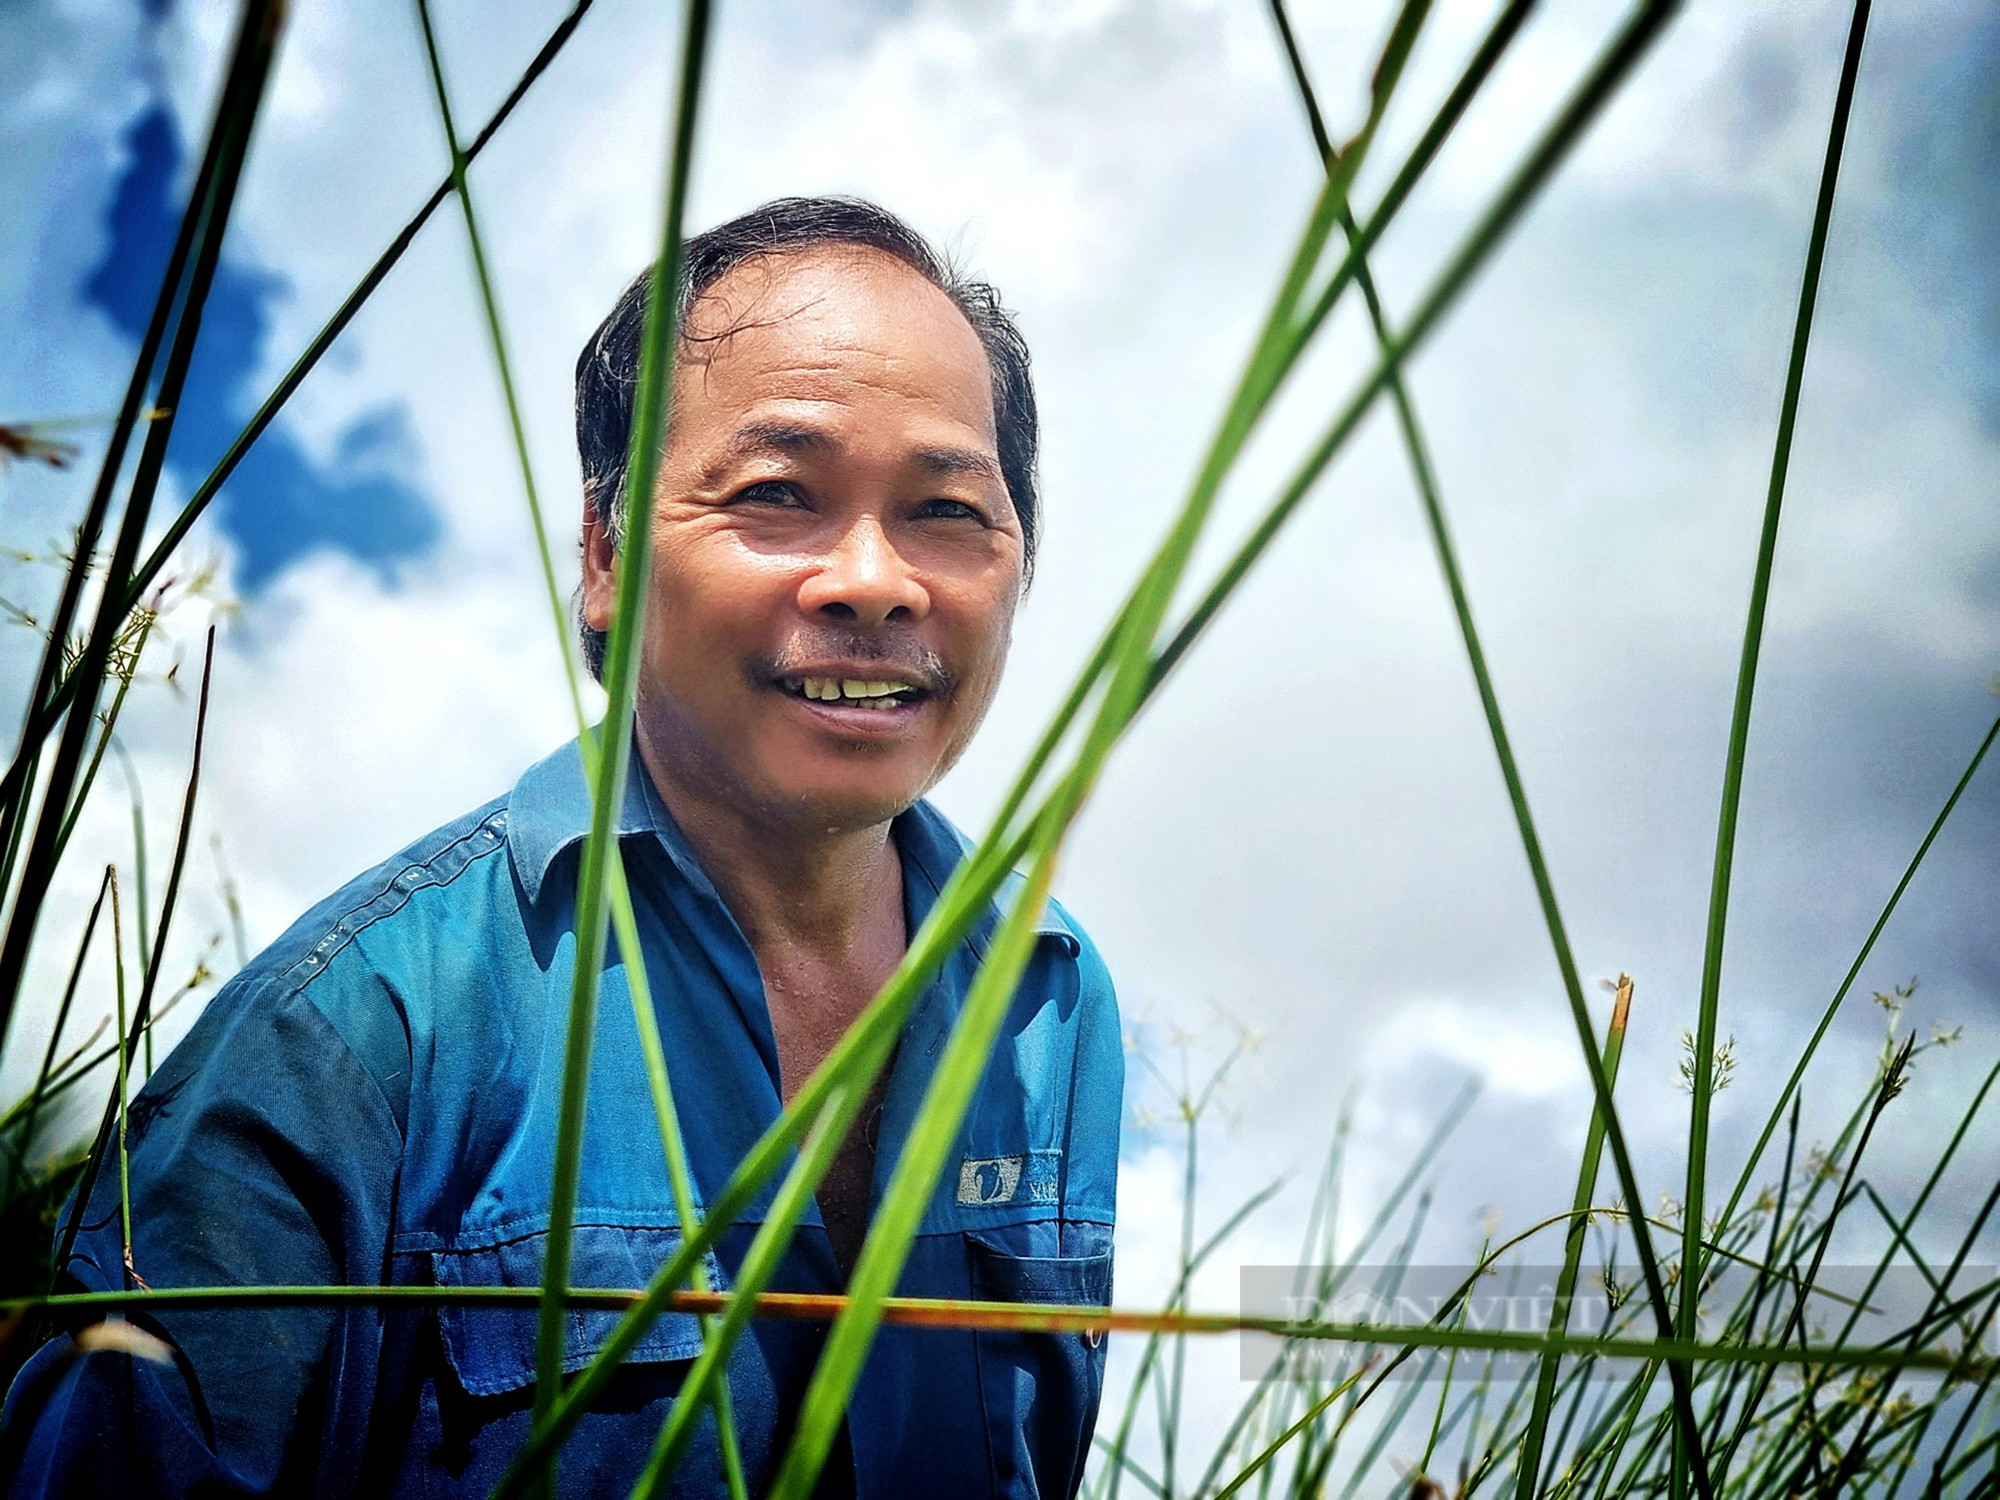 Nhiều người dân Trà Vinh ổn định cuộc sống hơn 20 năm từ nghề trồng cây lác - Ảnh 1.